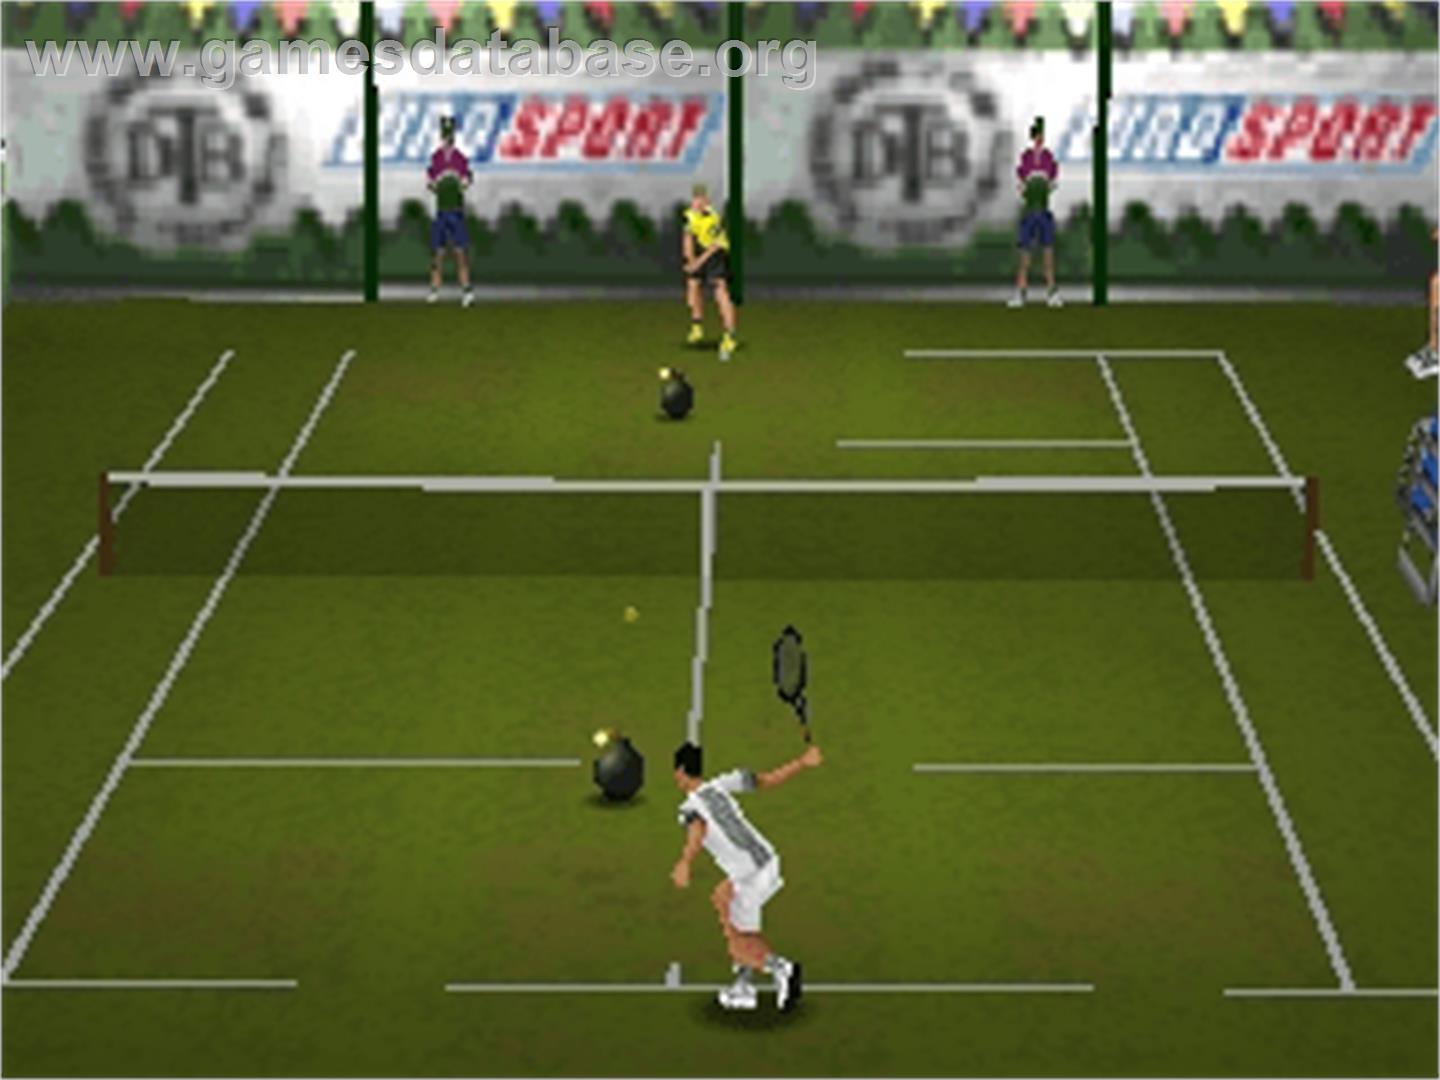 All Star Tennis '99 - Nintendo N64 - Artwork - In Game